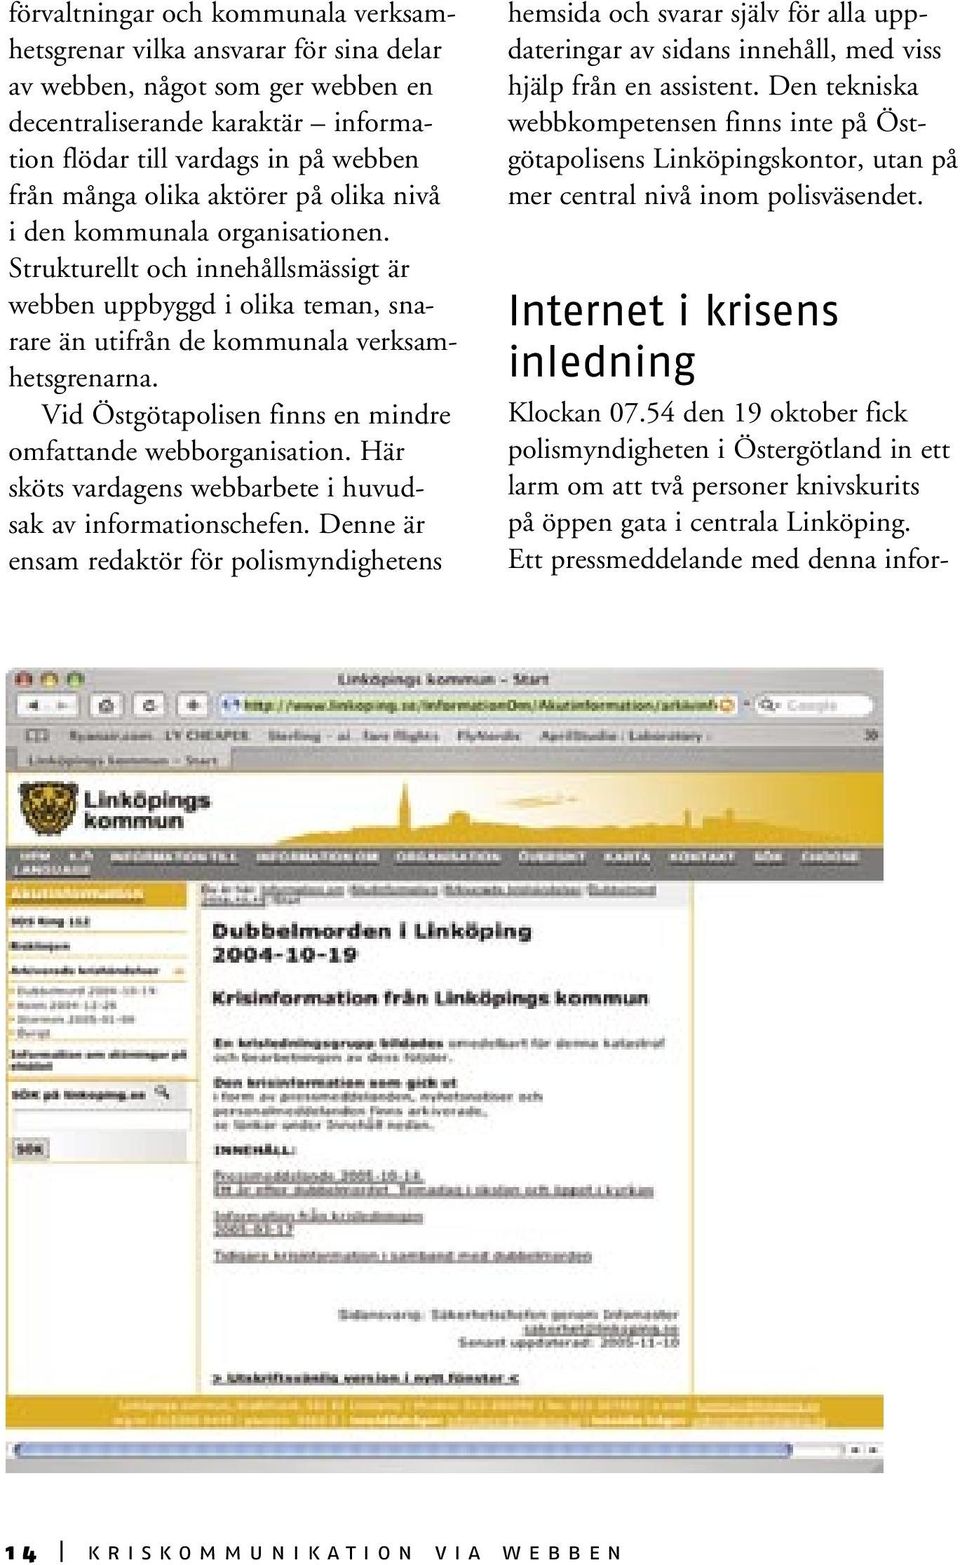 Vid Östgötapolisen finns en mindre omfattande webborganisation. Här sköts vardagens webbarbete i huvudsak av informationschefen.